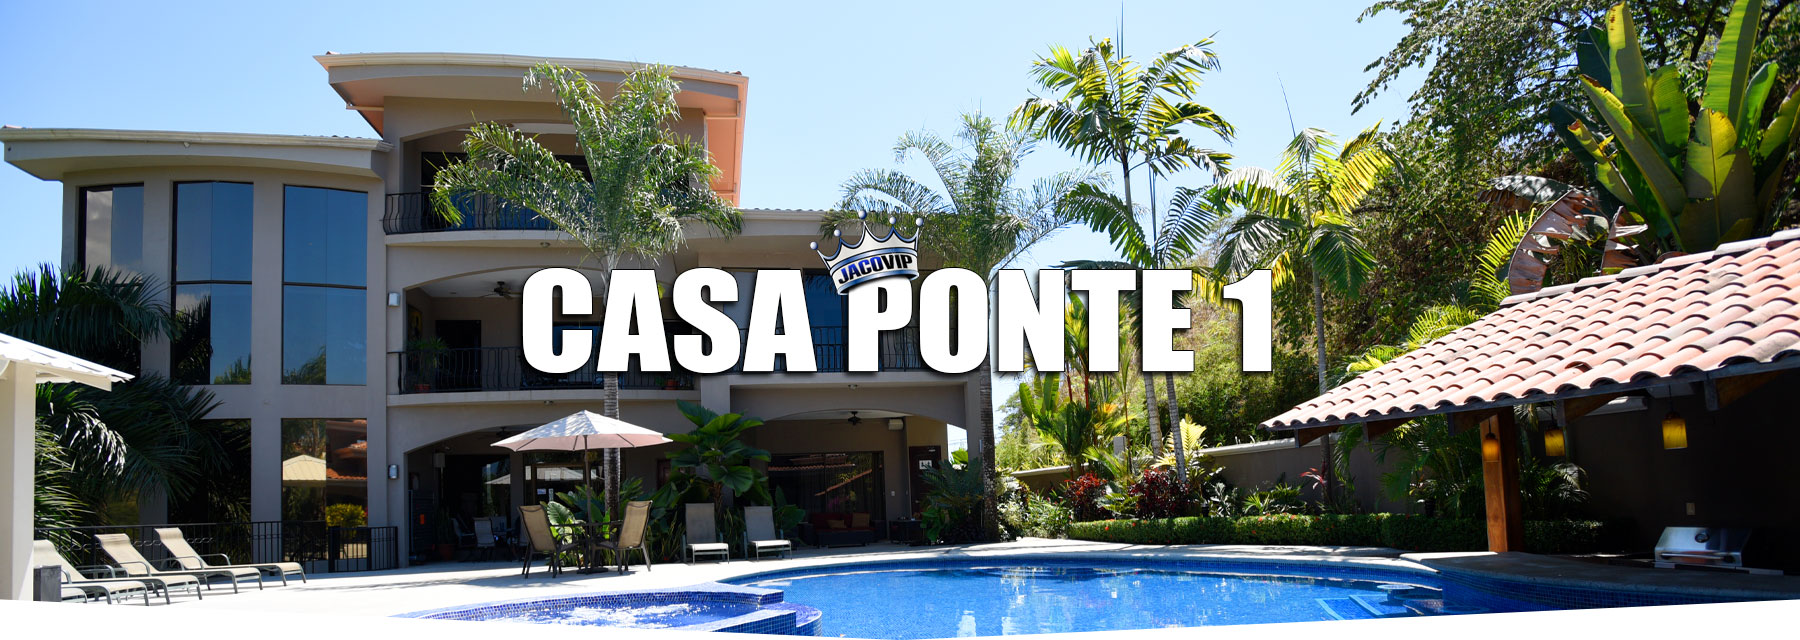 Casa Ponte Jaco Beach Costa Rica vacation rental villa